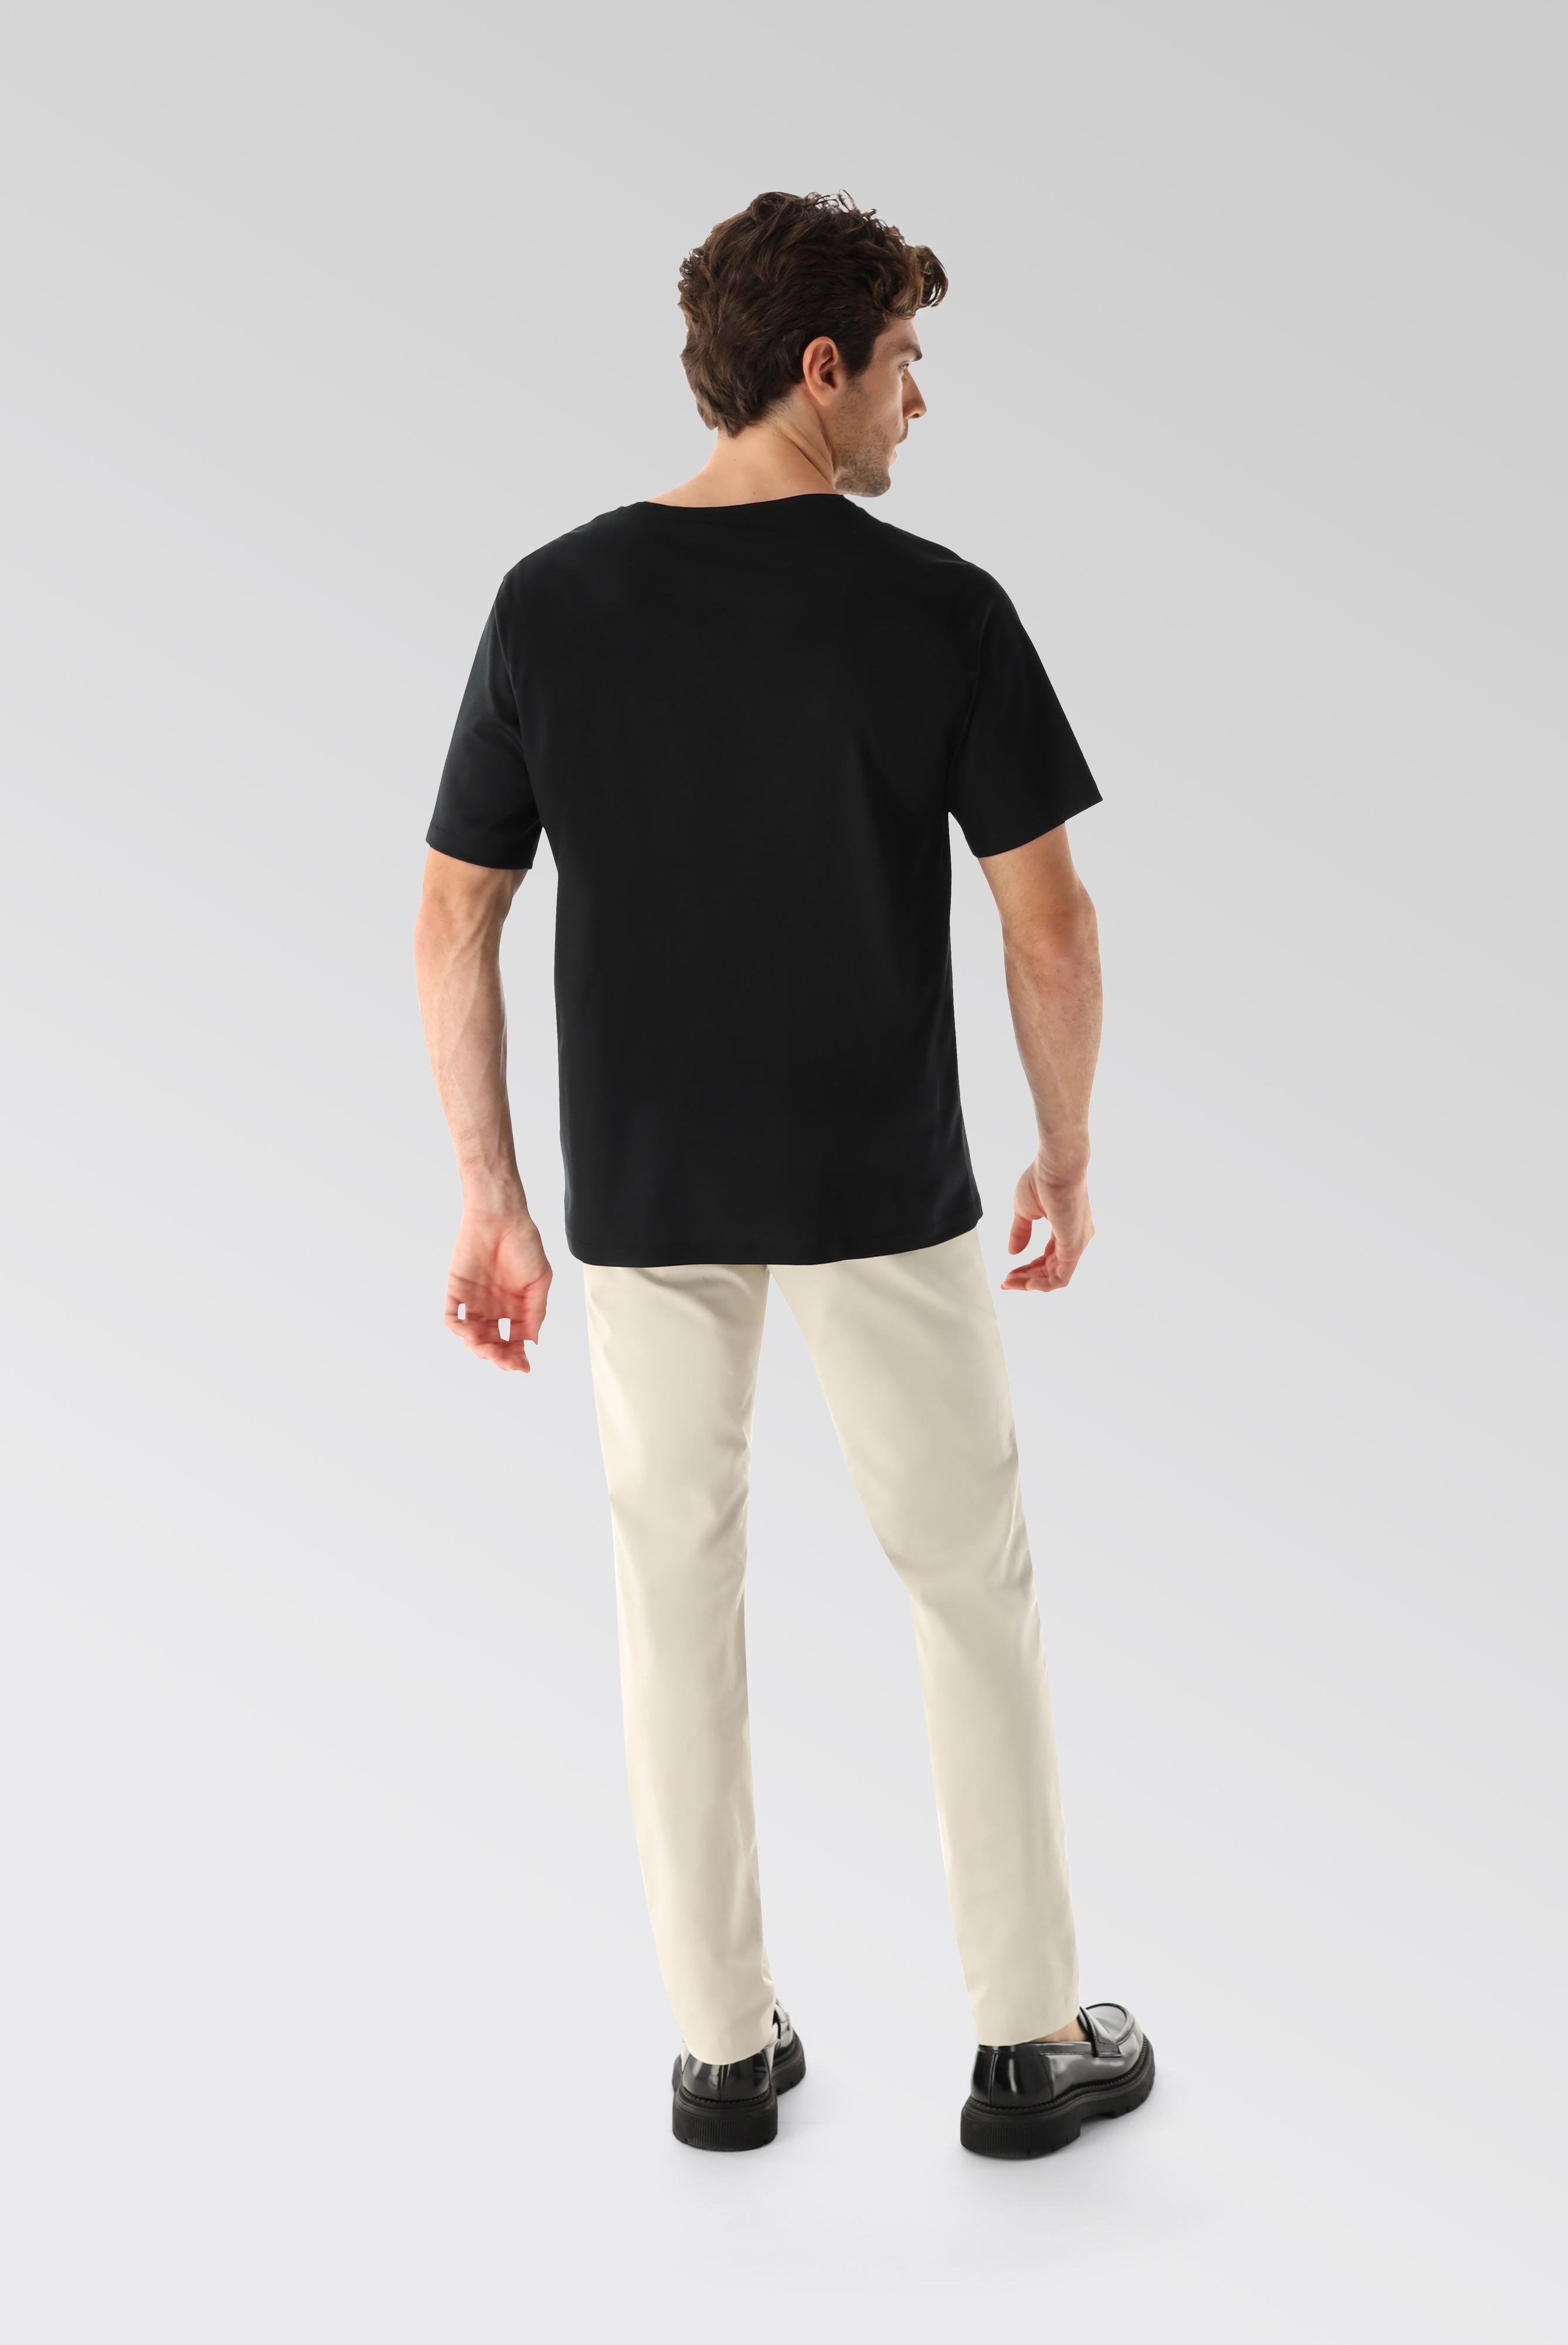 T-Shirts+Oversize Jersey T-Shirt mit Brusttasche+20.1776.GZ.180031.099.M